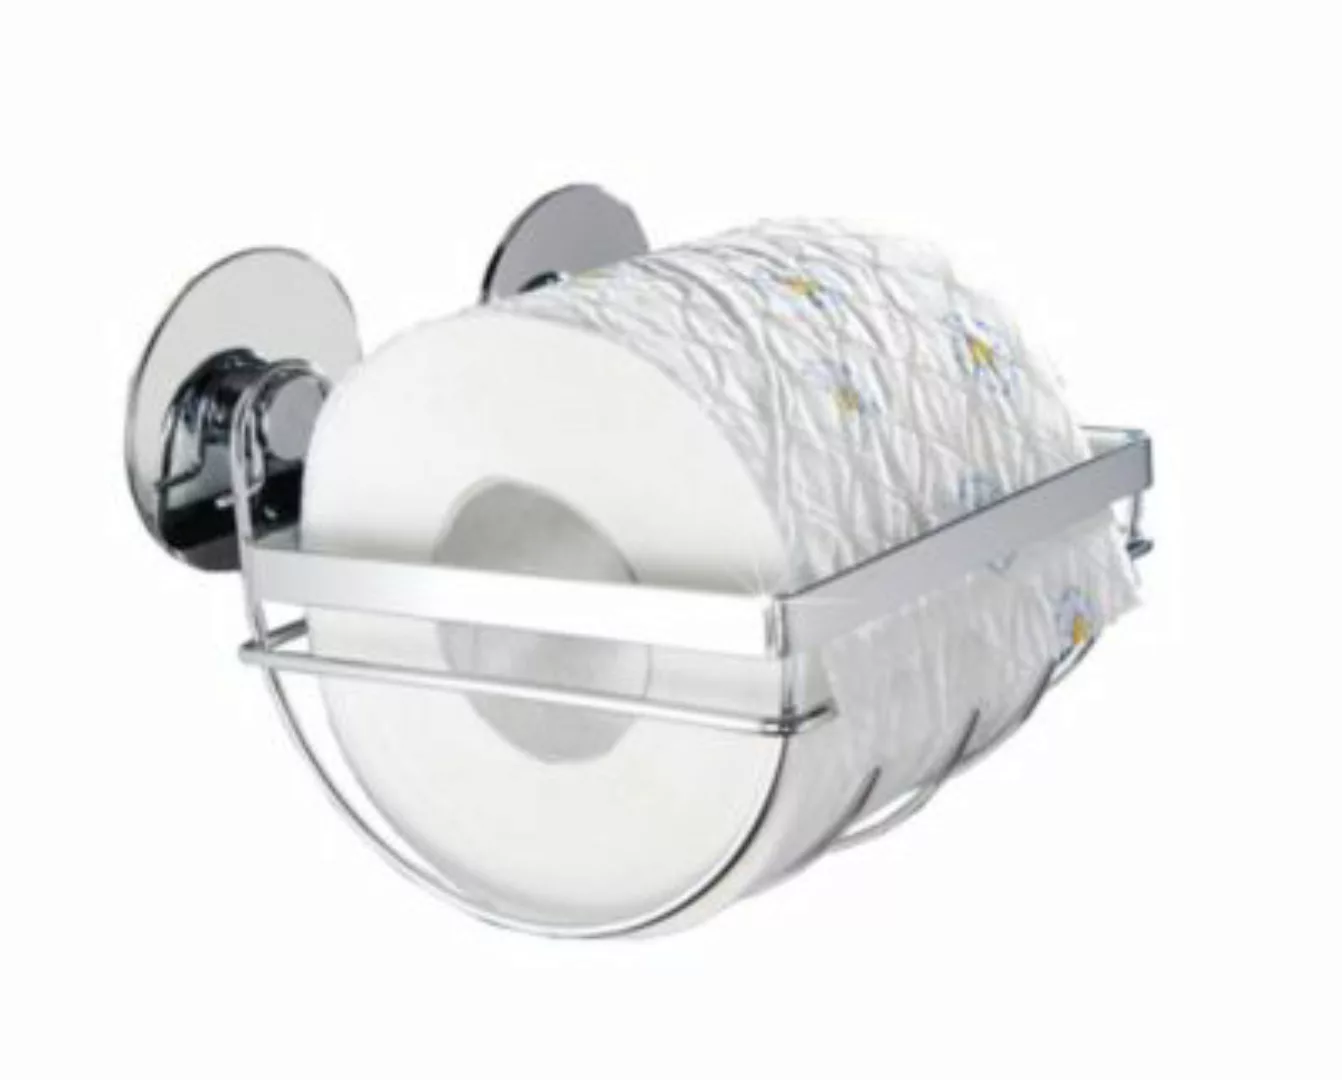 Maximex TurboFIX Edelstahl Toilettenpapierhalter, rostfrei silber günstig online kaufen